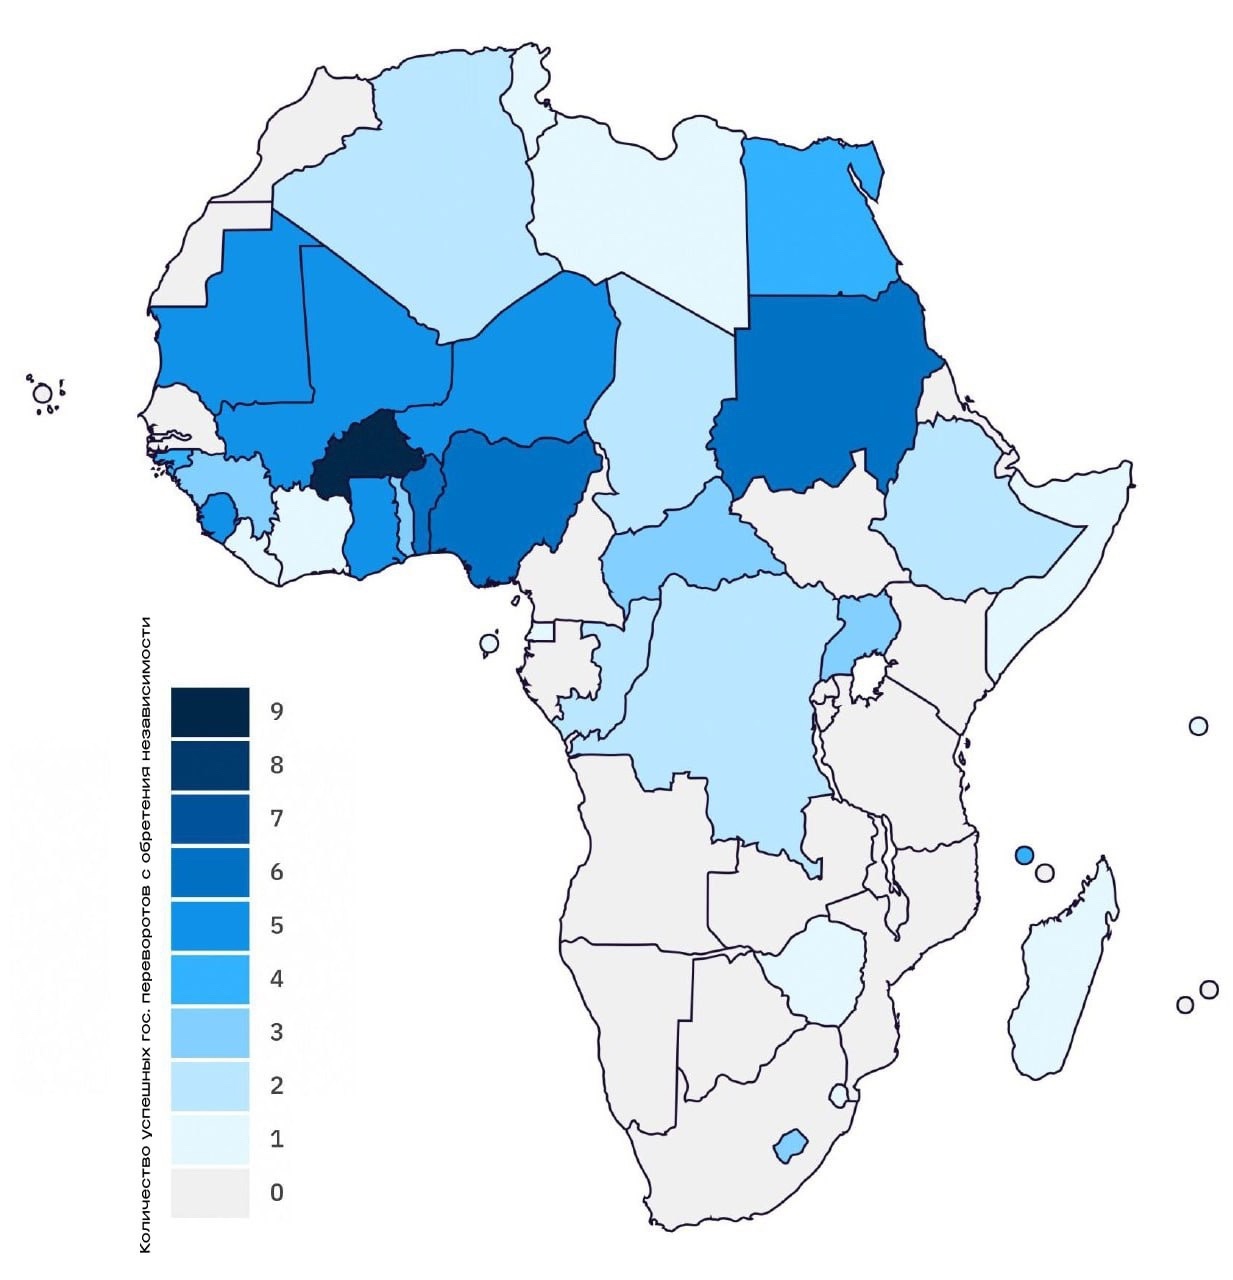 Количество военных переворотов, начиная с момента получения независимости и до 2023 года в Африке